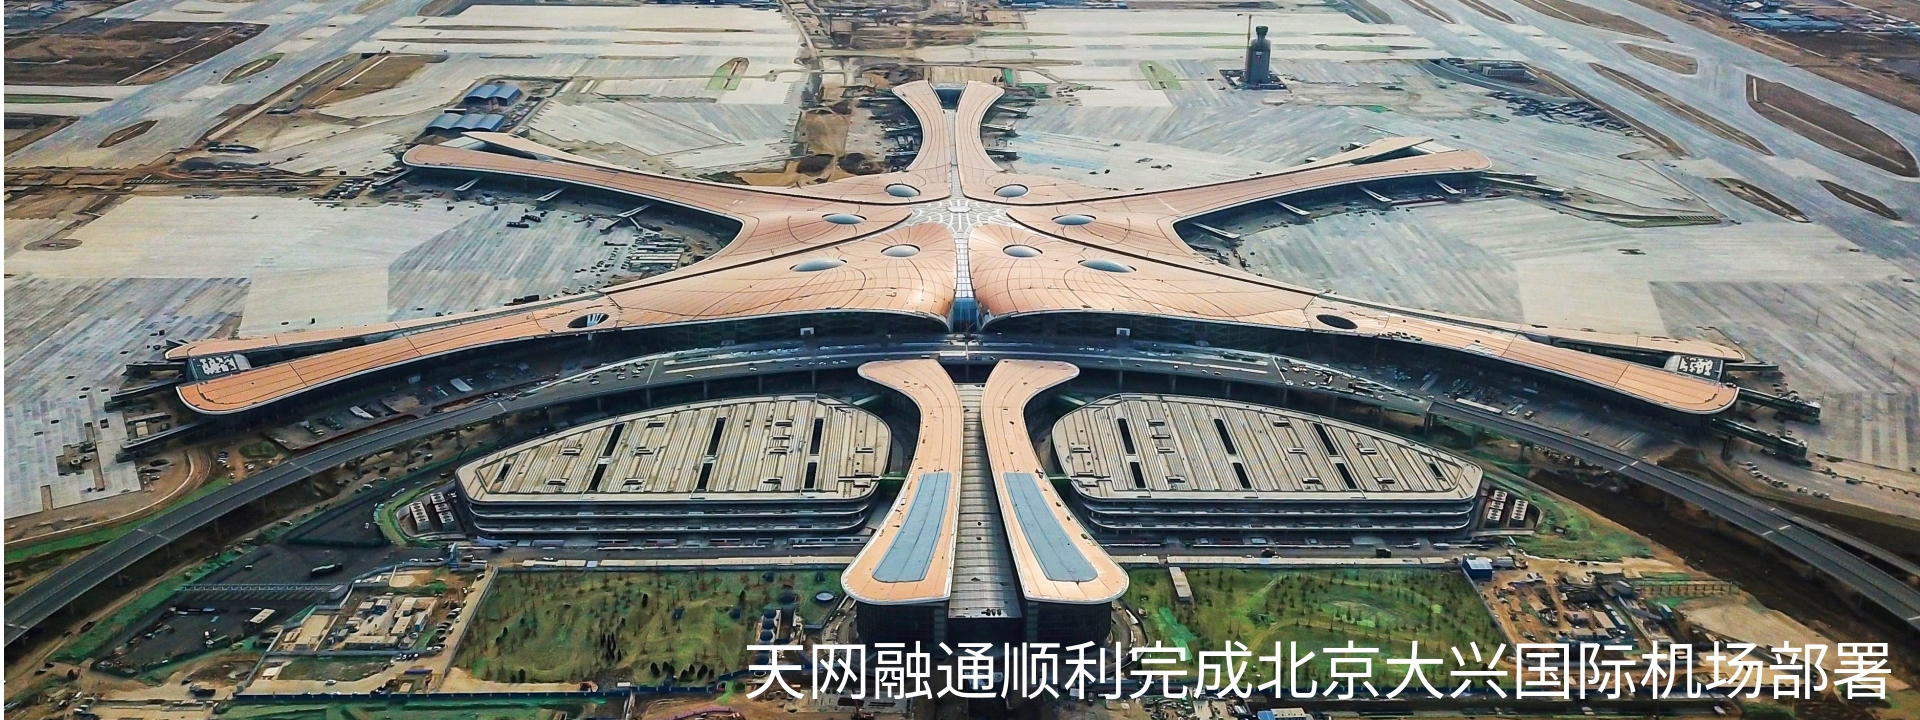 天网融通顺利完成北京大兴国际机场部署